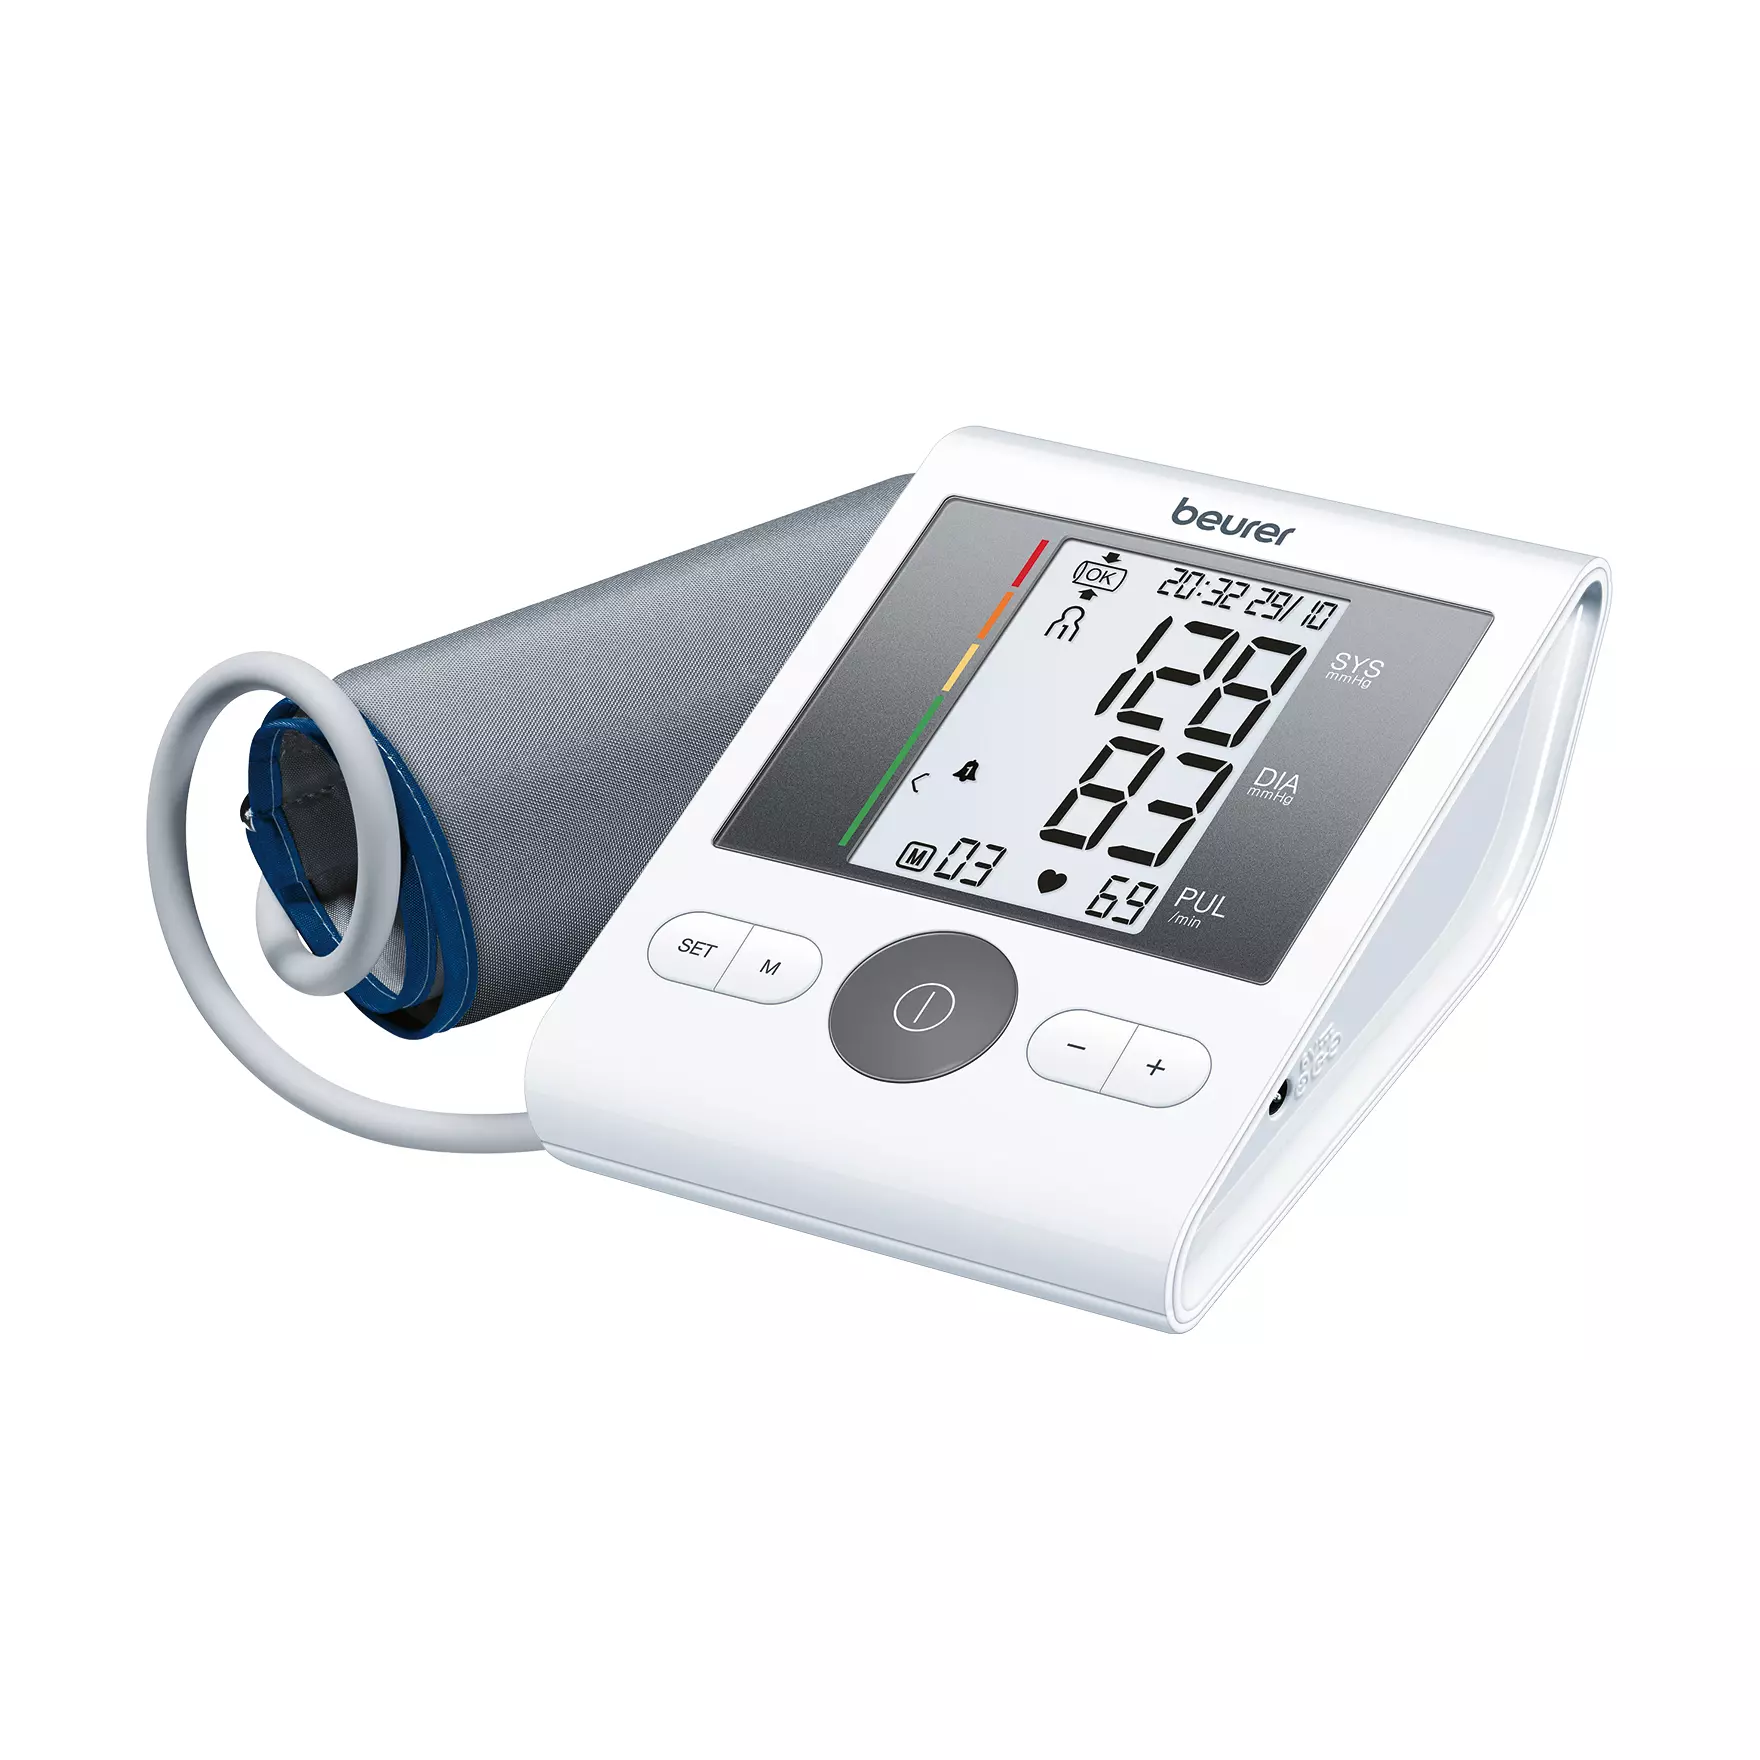 Upper arm blood pressure monitor Beurer BM 28